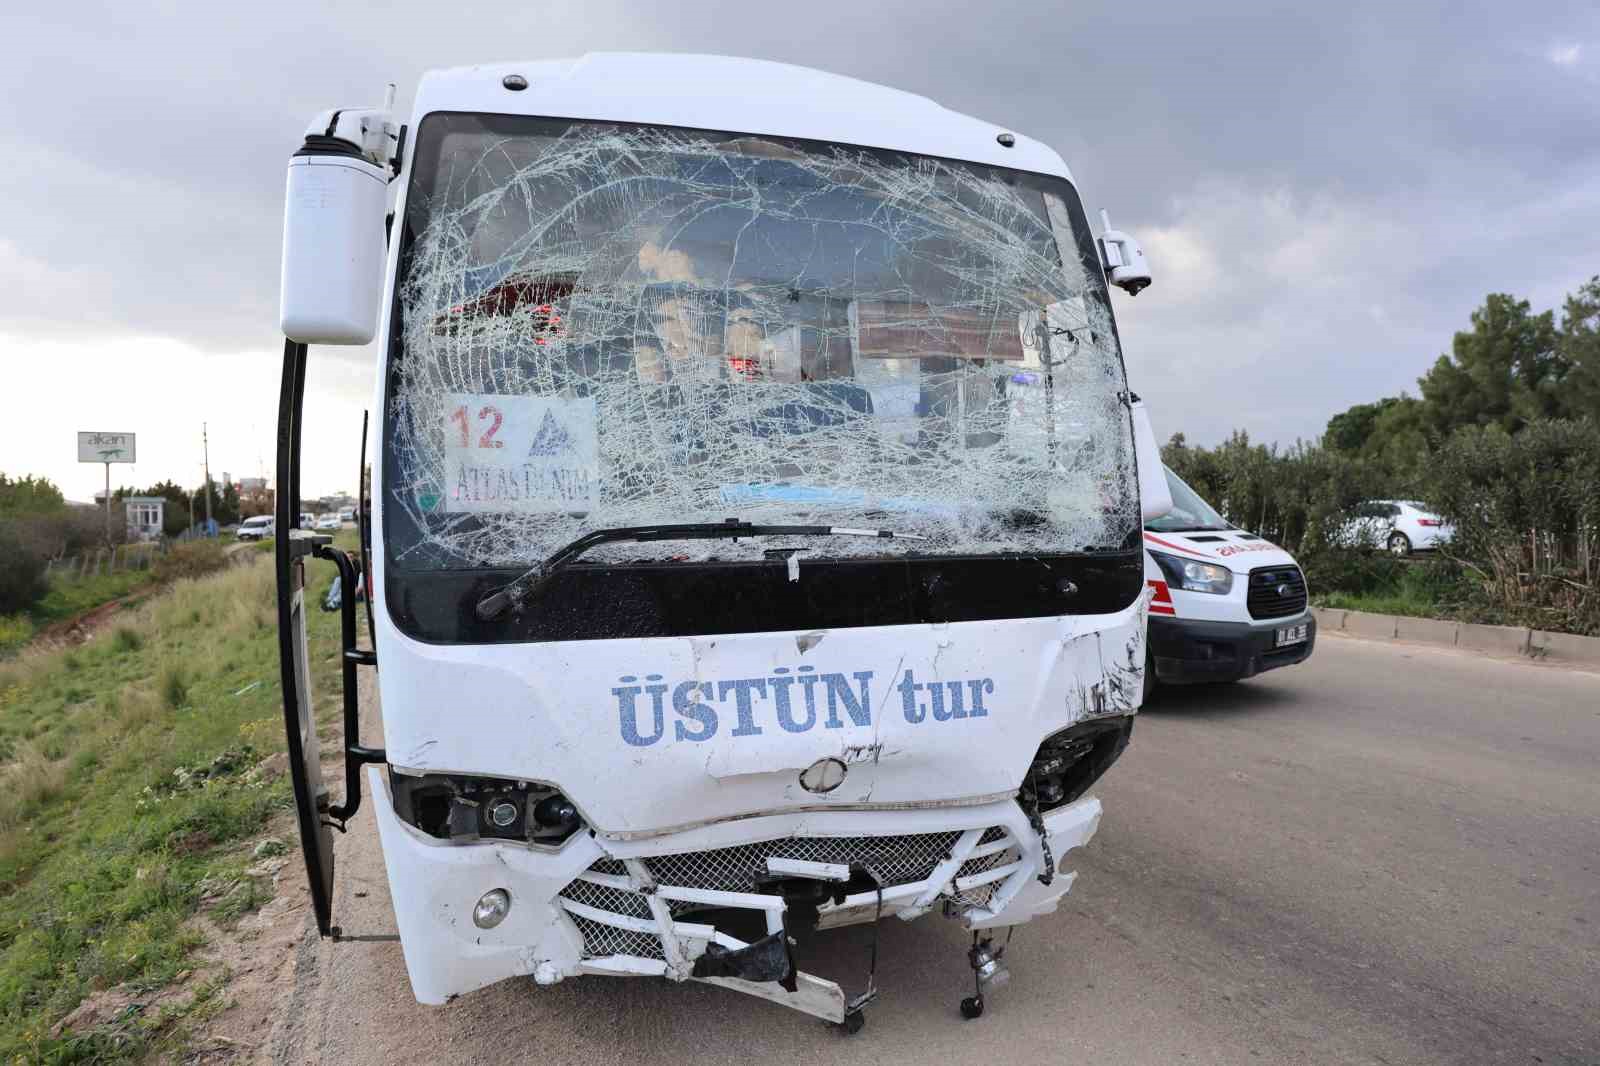 Adana’da otomobil karşı şeride geçip midibüse çarptı: 2 ölü, 14 yaralı
